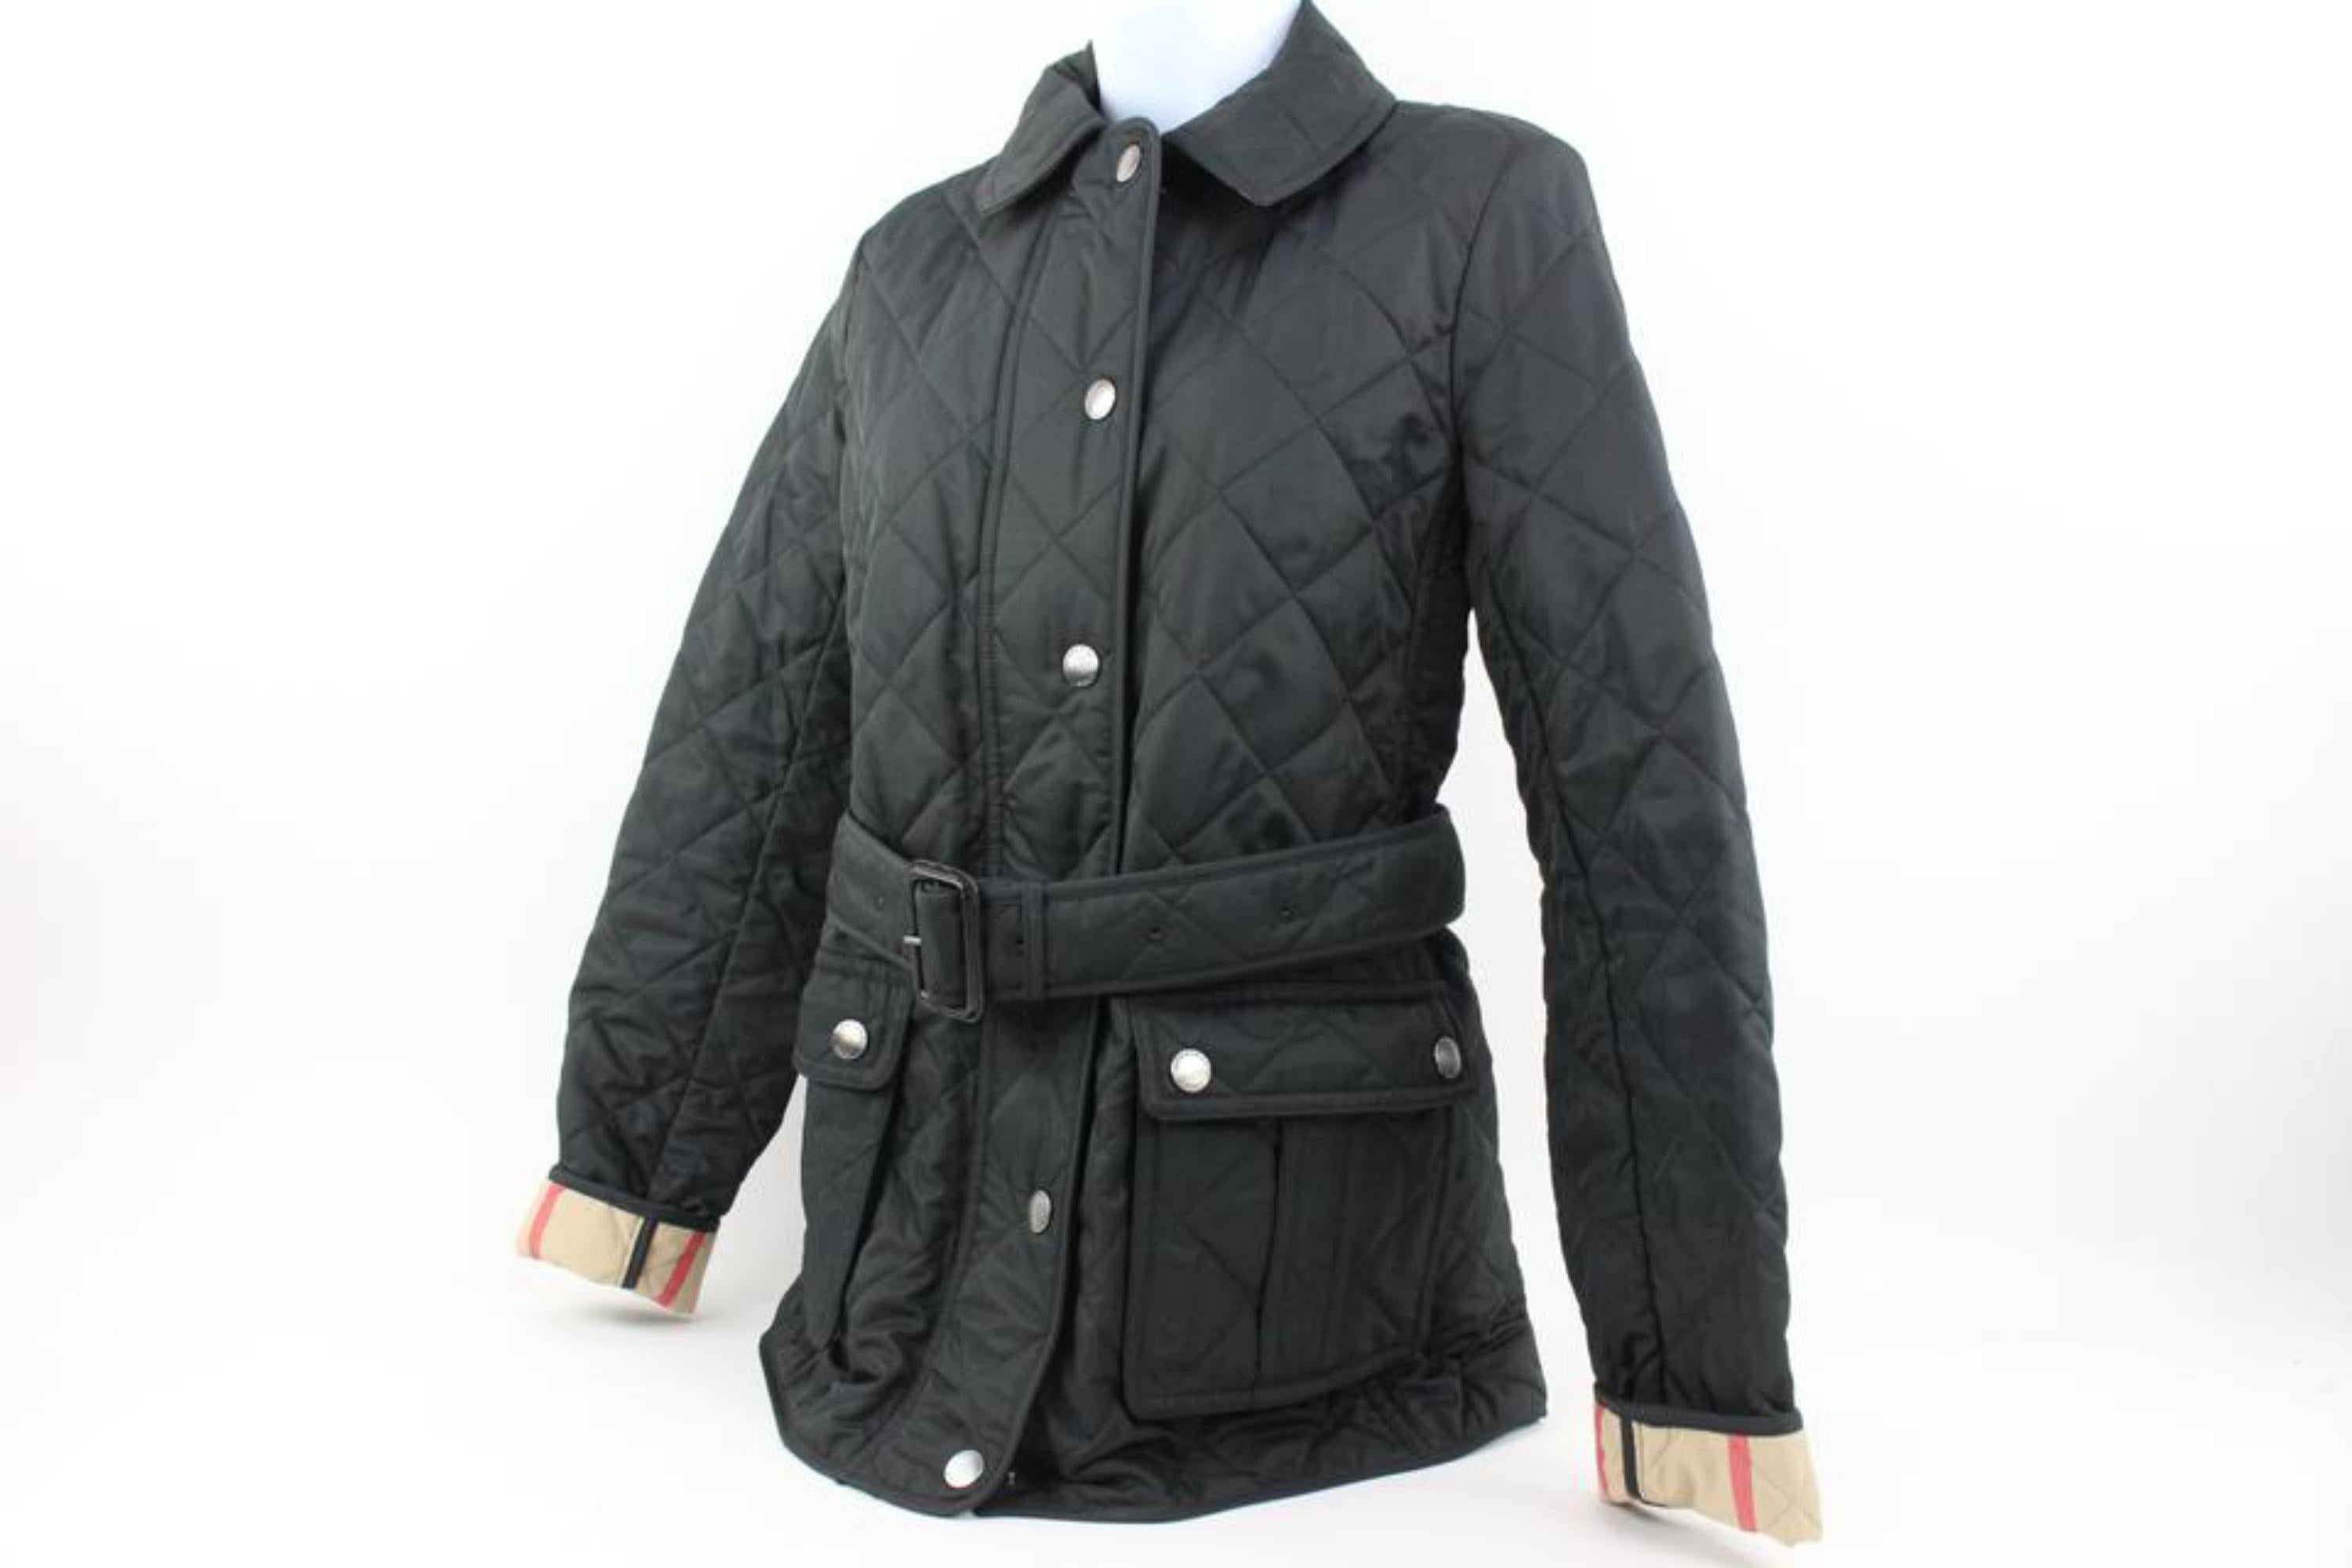 Burberry Femme Small Black Quilted Nova Check Belted Jacket 120b33
Code de date/Numéro de série : TRMCTTEK120IST
Fabriqué en : Turquie
Mesures : Longueur :  18